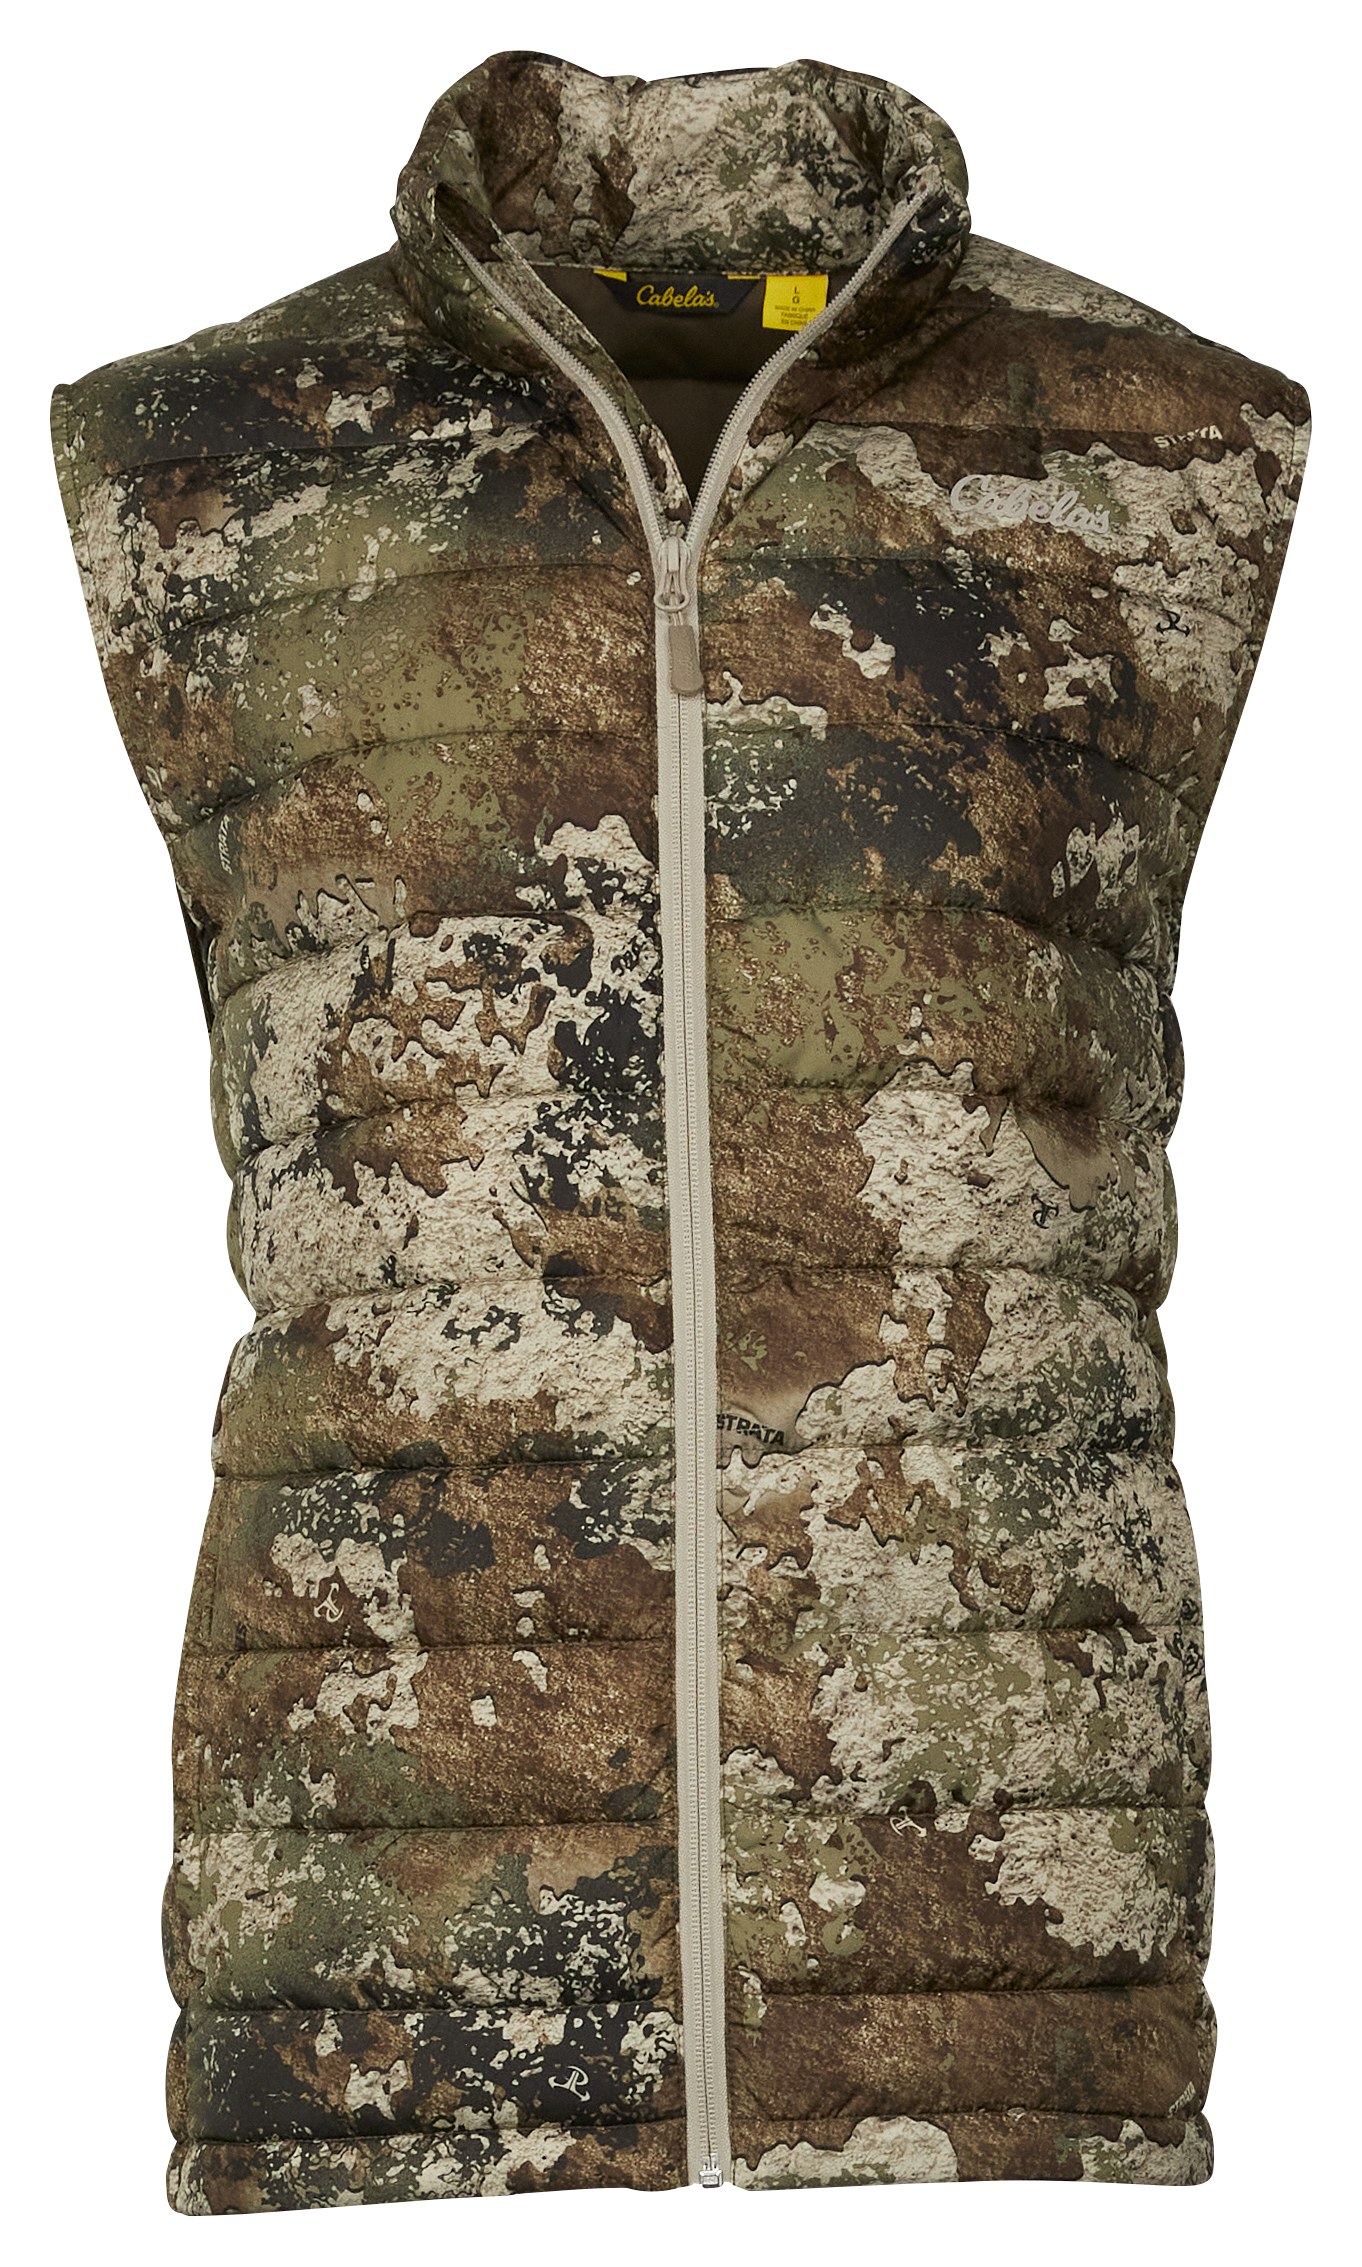 Cabela's Insulated Puffy Camo Vest for Men - TrueTimber Strata - 2XL